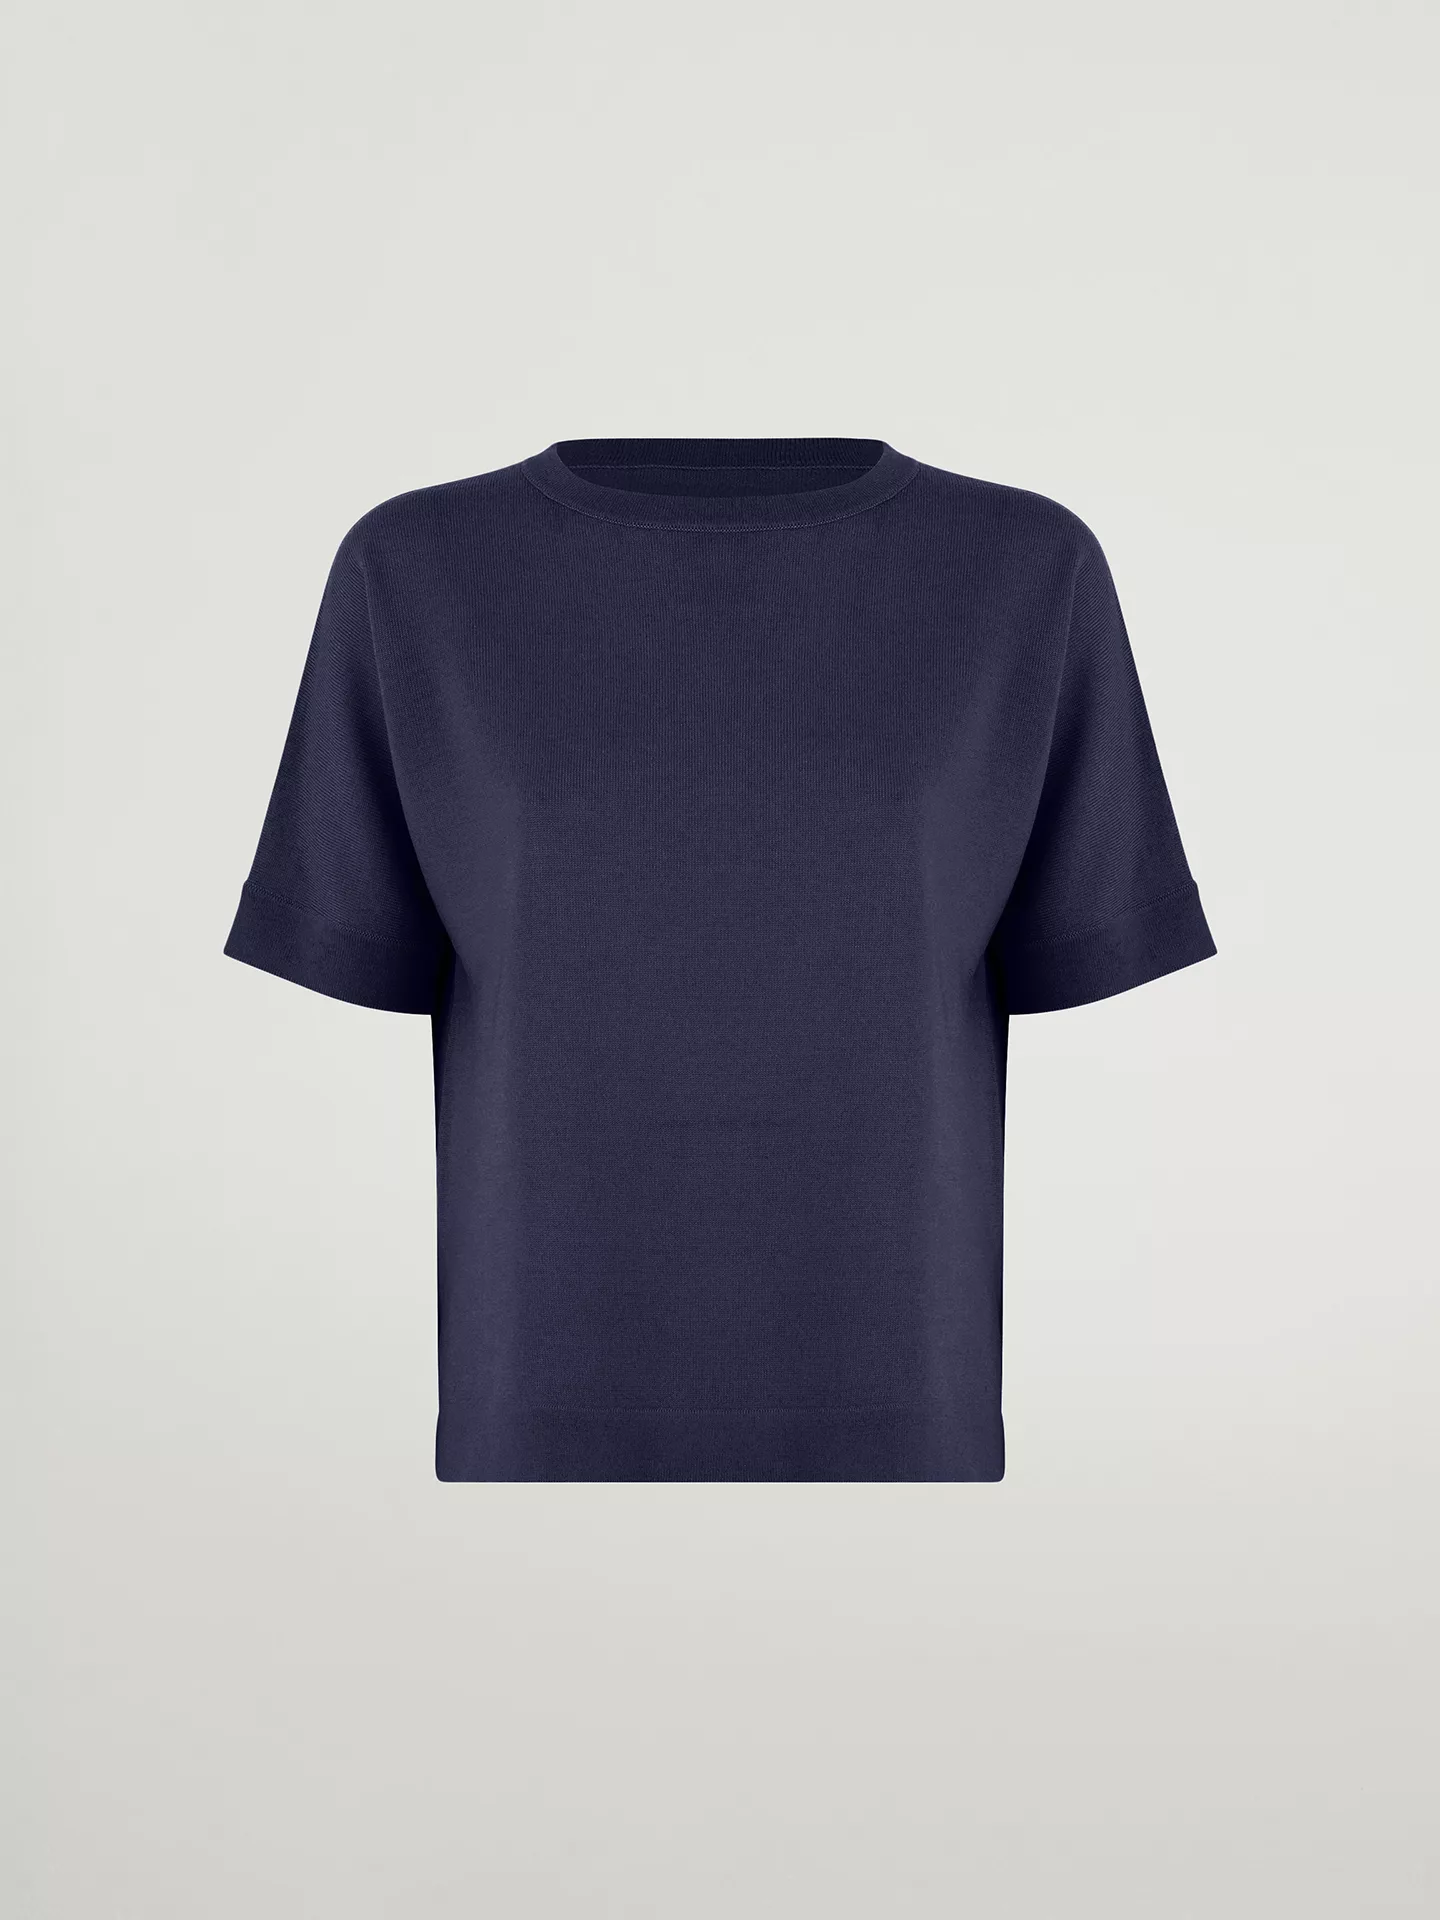 Wolford - Merino Blend Top Short Sleeves, Frau, saphire blue, Größe: S günstig online kaufen